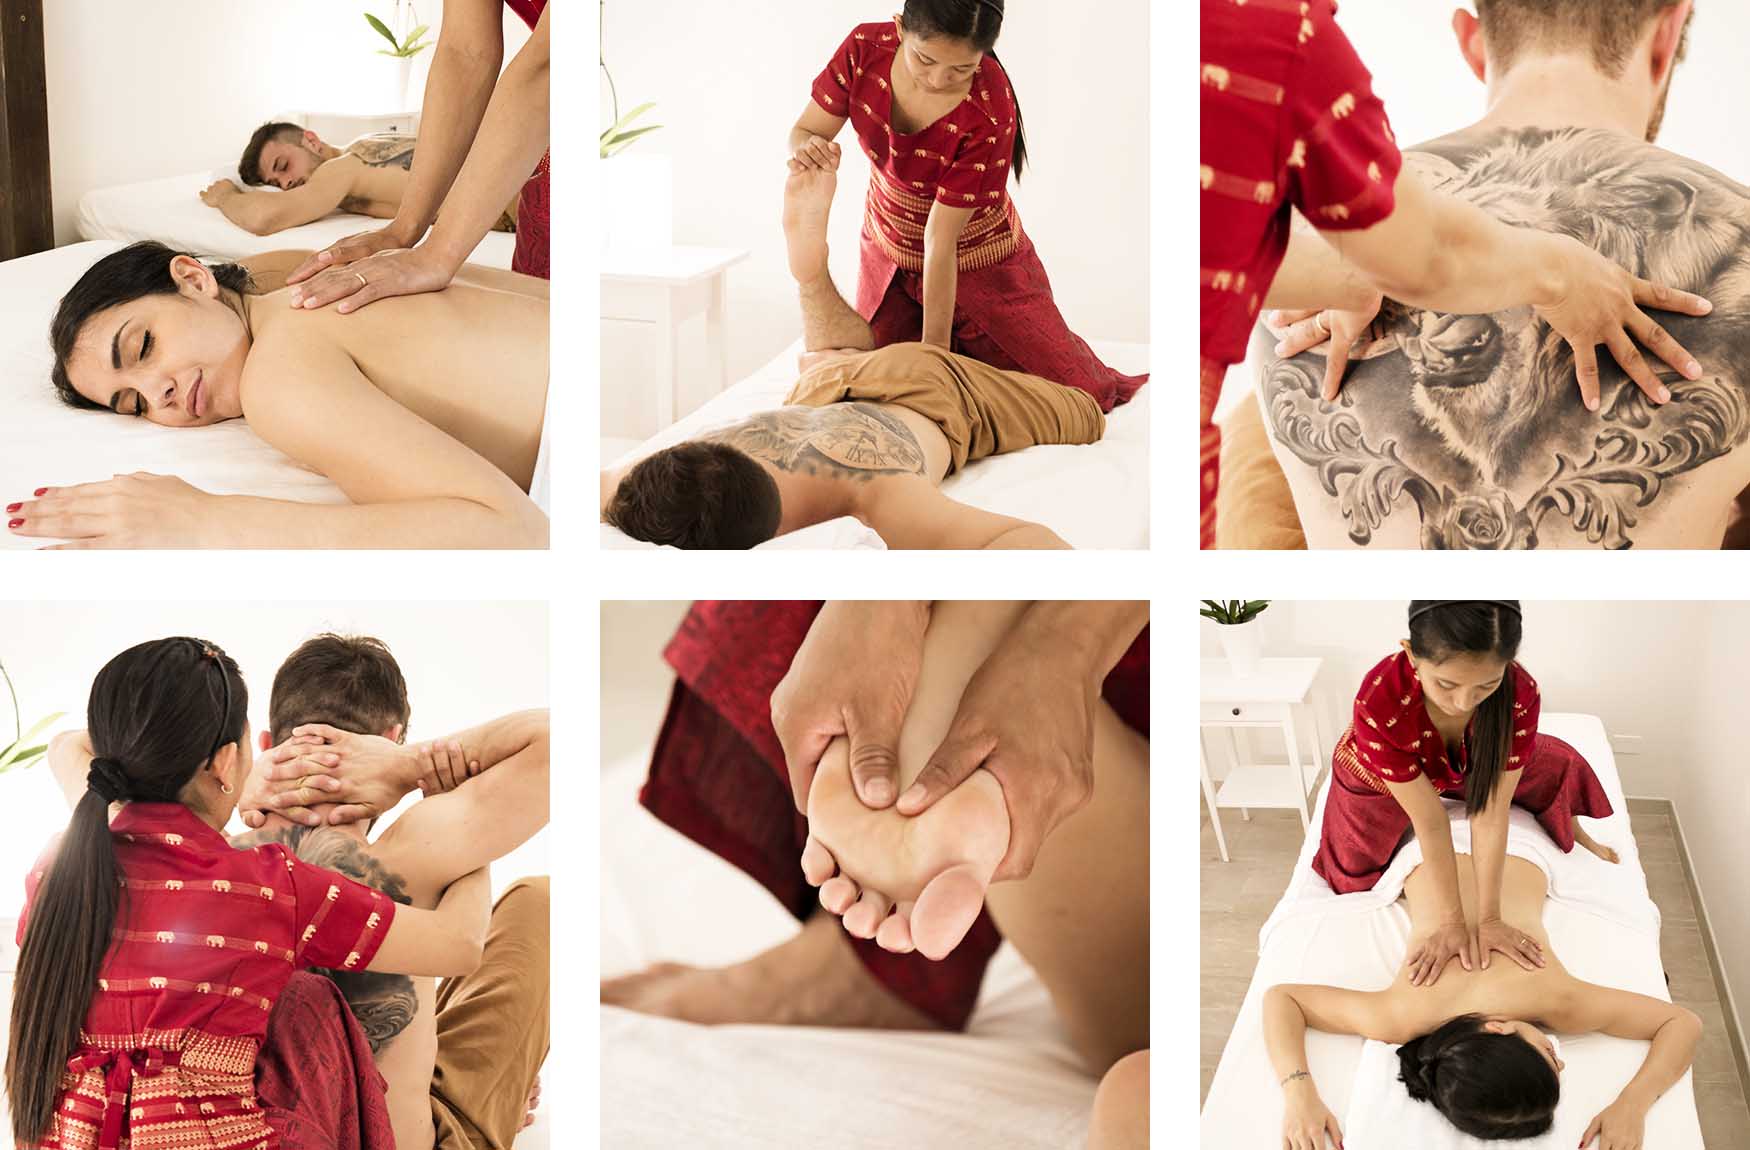 Szenen einer autentische Thaimassage an einem jungen sportlichen Mann und einer attraktiven jungen Frau im My Thai Center in Bologna.